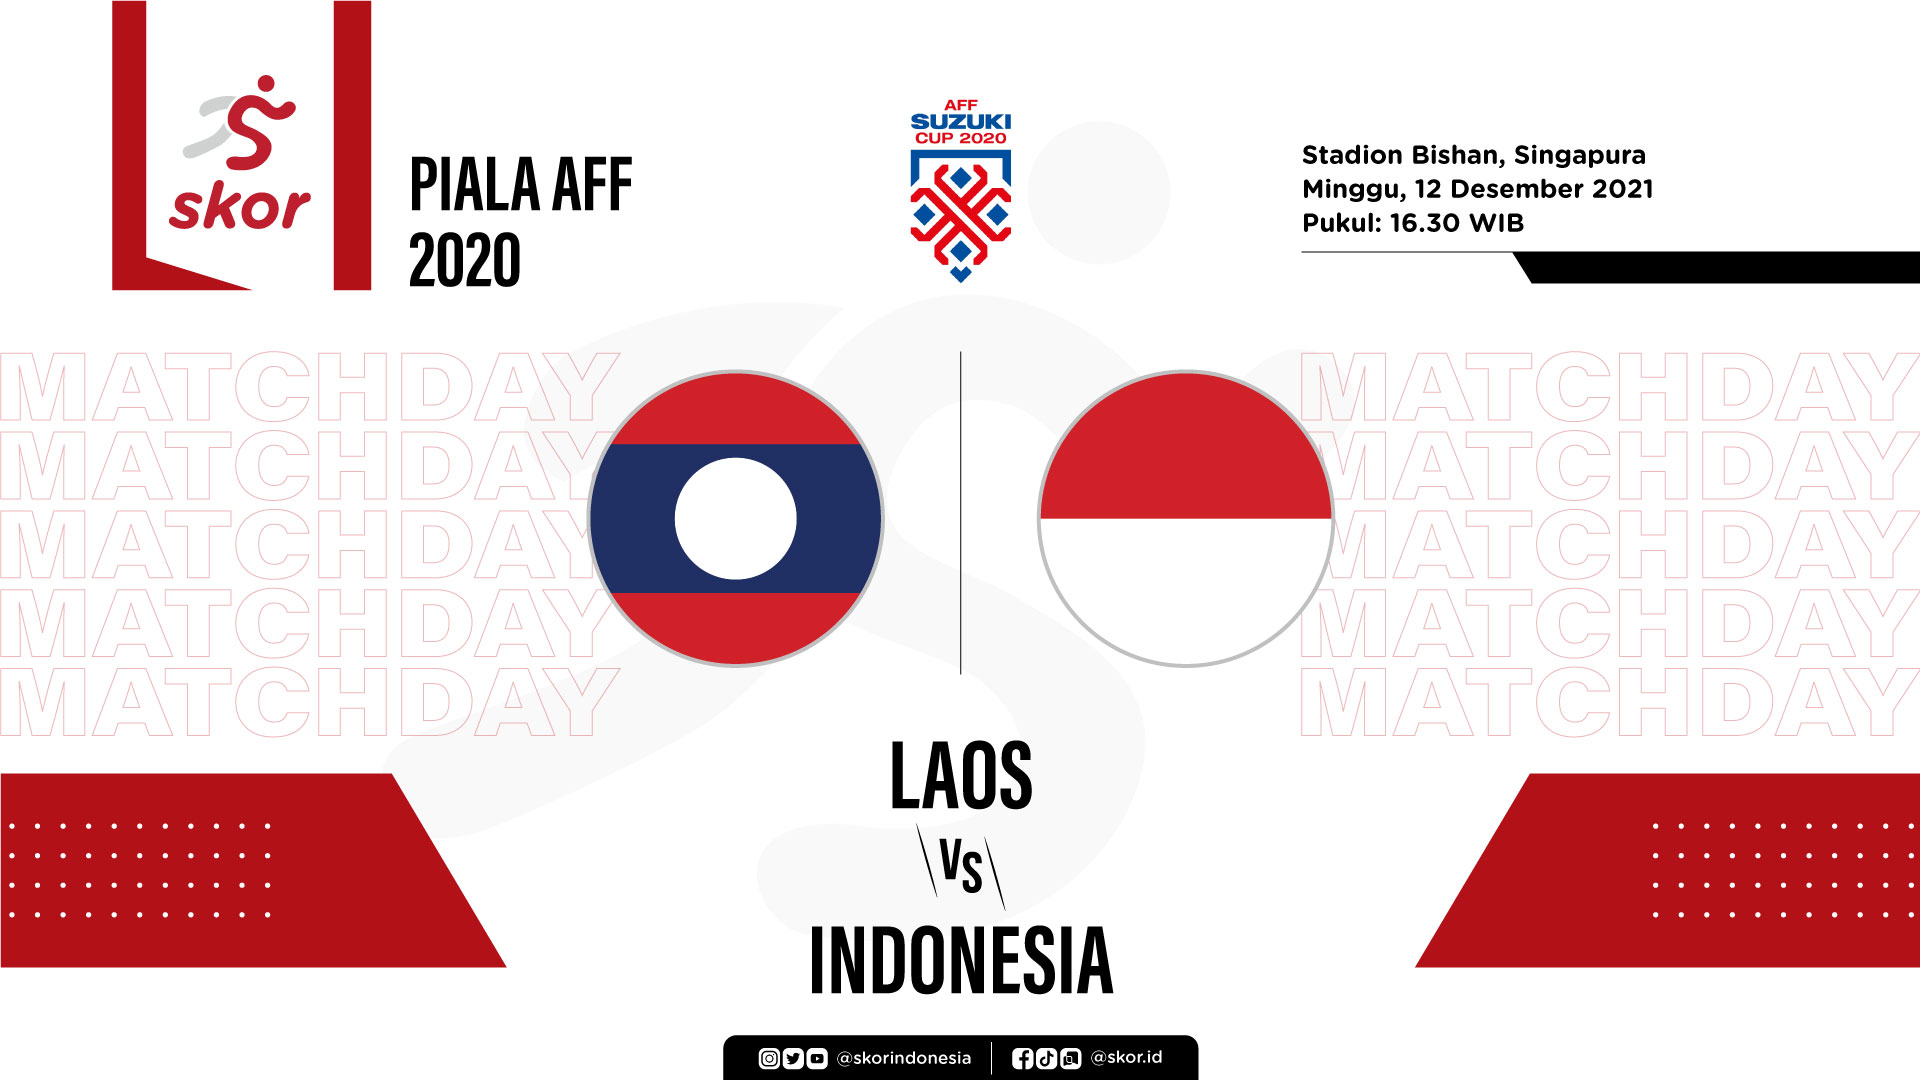 Skor Indeks Piala AFF 2020: MoTM dan Rating Pemain Laos vs Indonesia